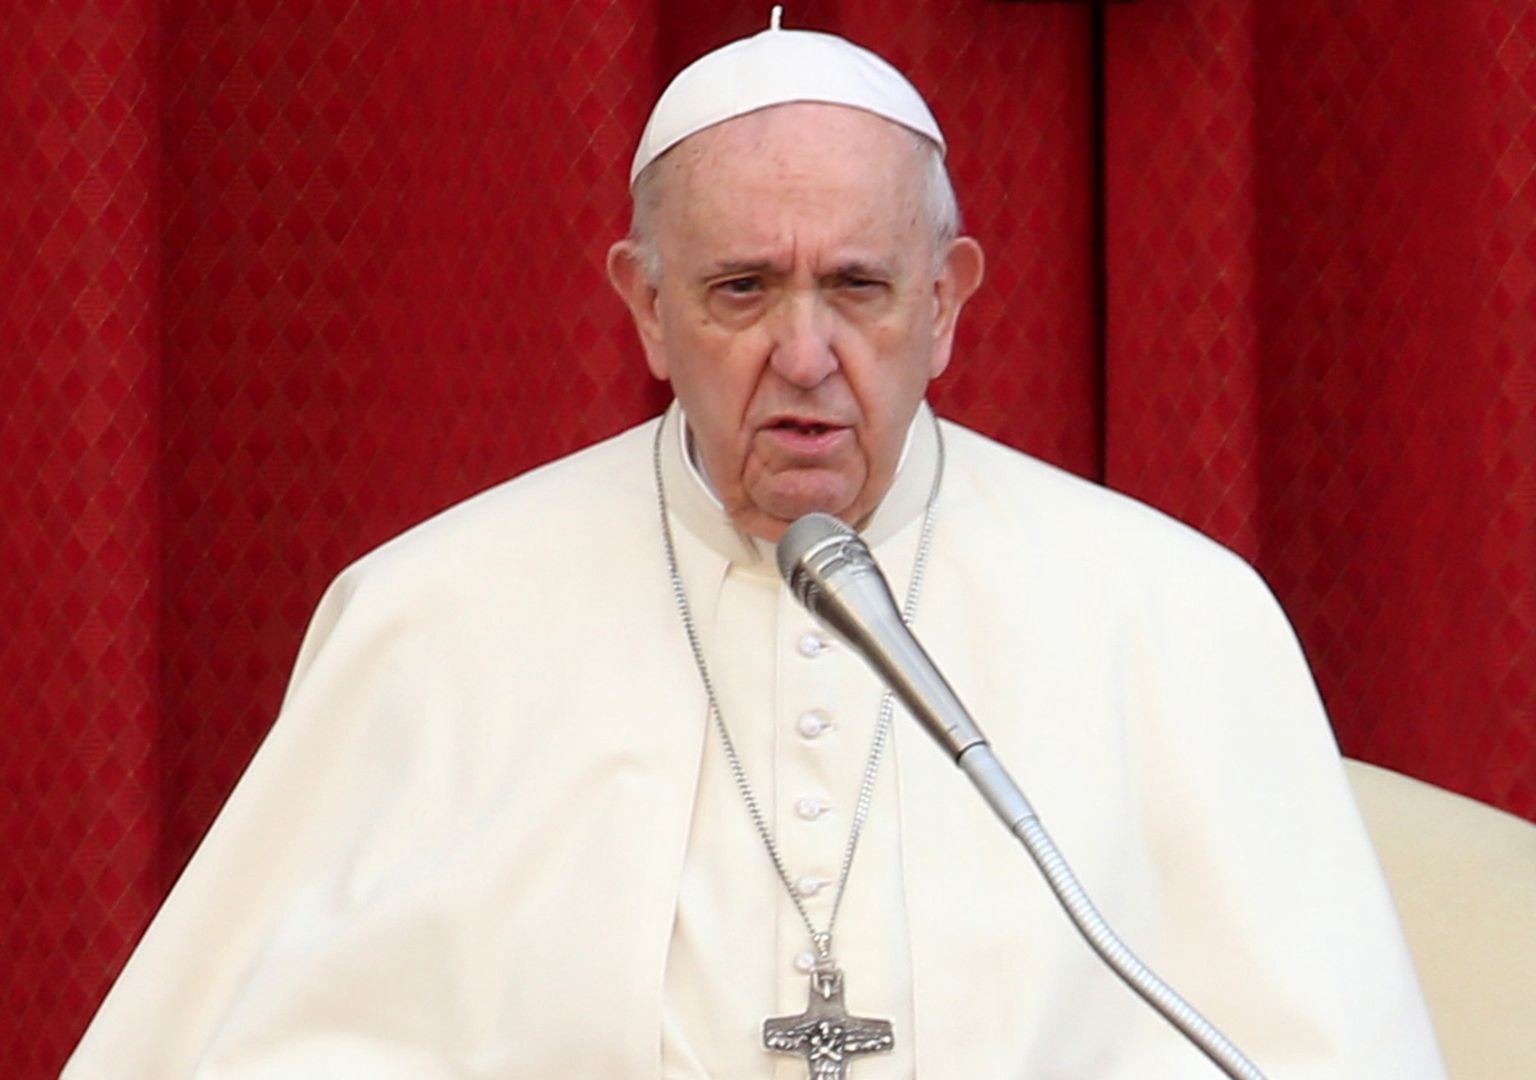 Papież Franciszek stanowczo ws. kobiet w ciąży. "To wstyd"